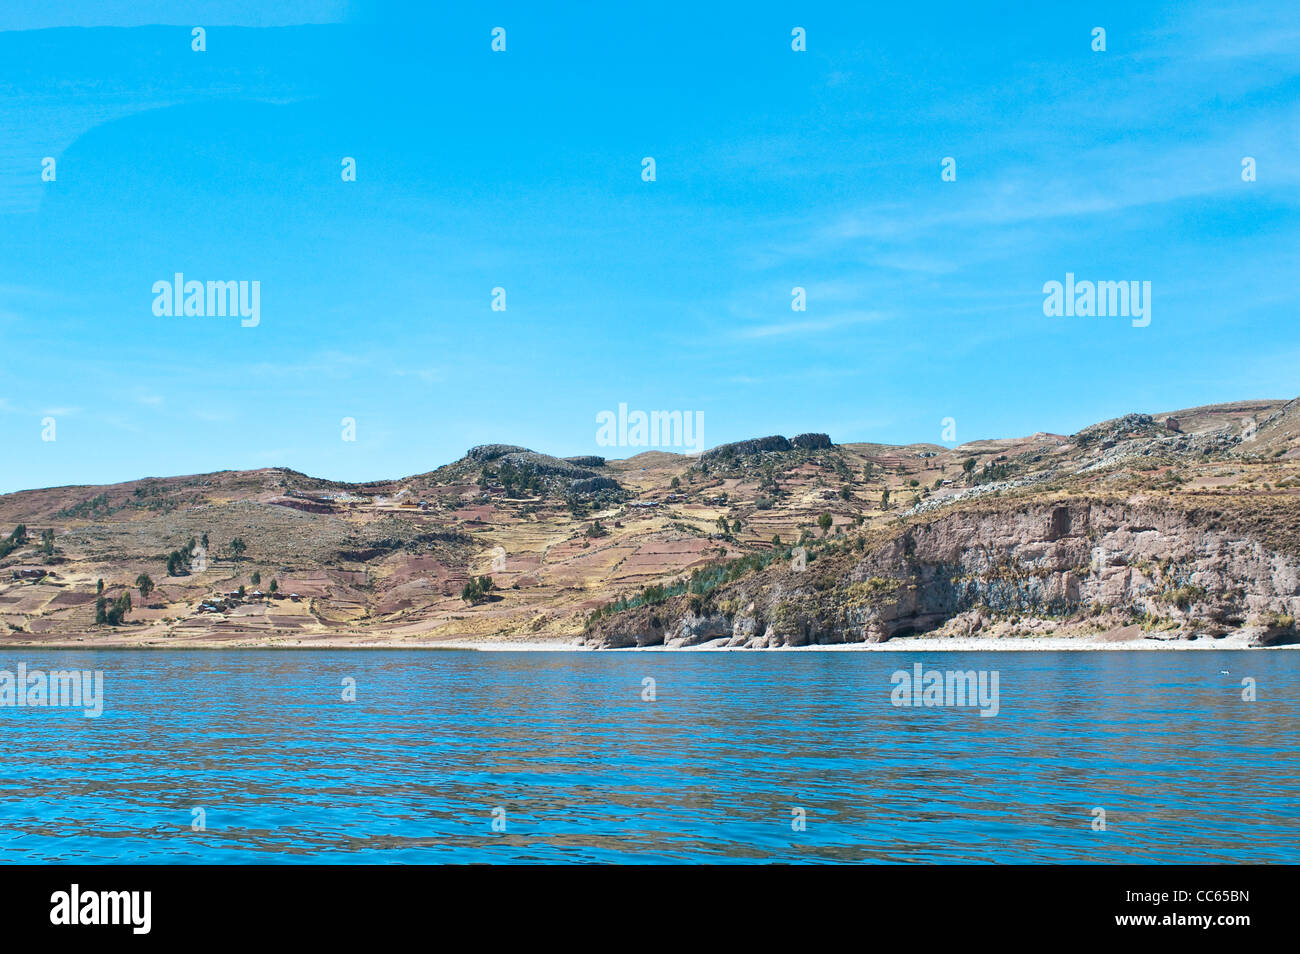 Taquile Island, Lake Titicaca, Peru. Stock Photo